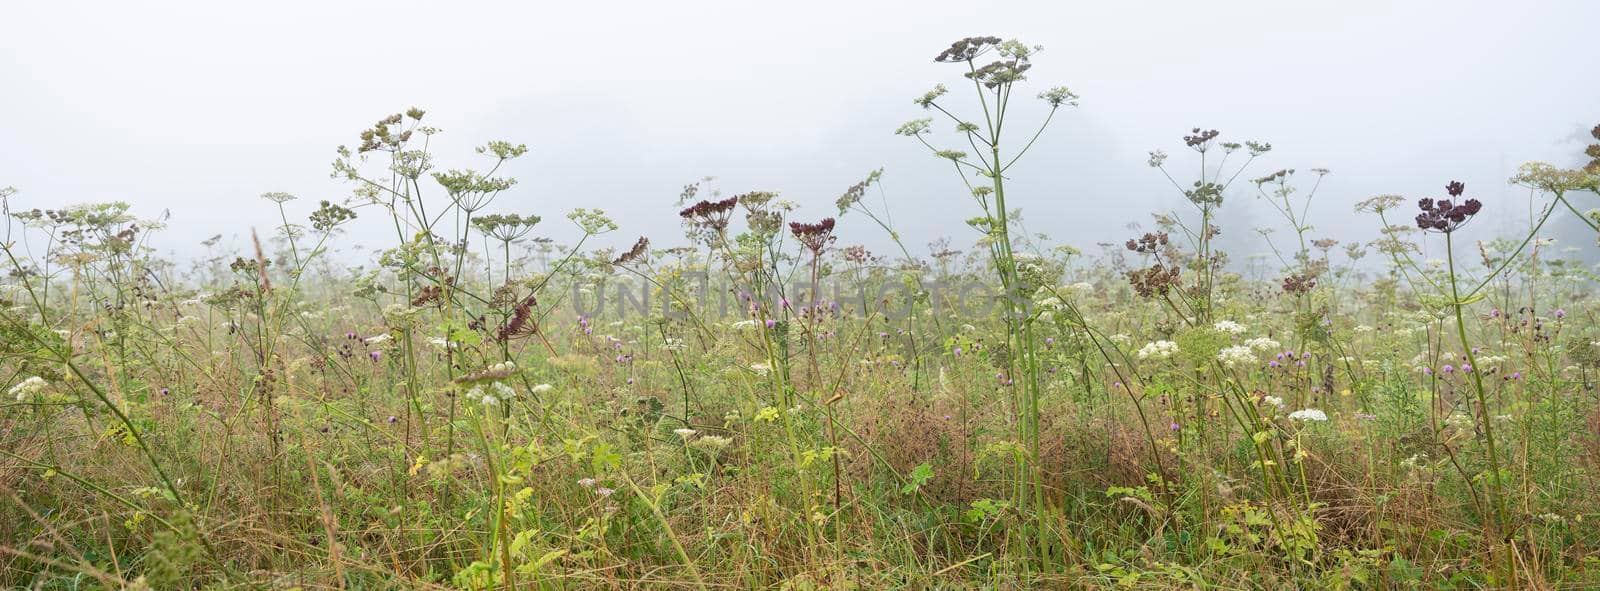 field with summer flowers in foggy regional park boucles de la seine near rouen in french normandy